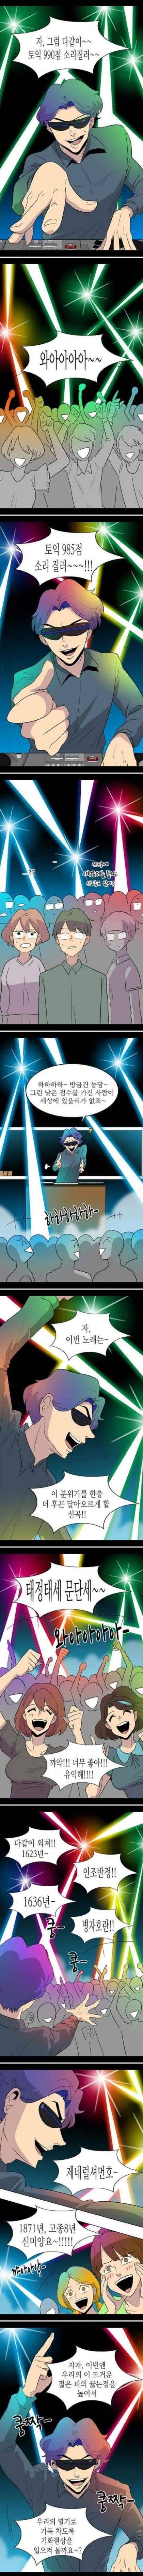 서울대학교 클럽 분위기 | 인스티즈